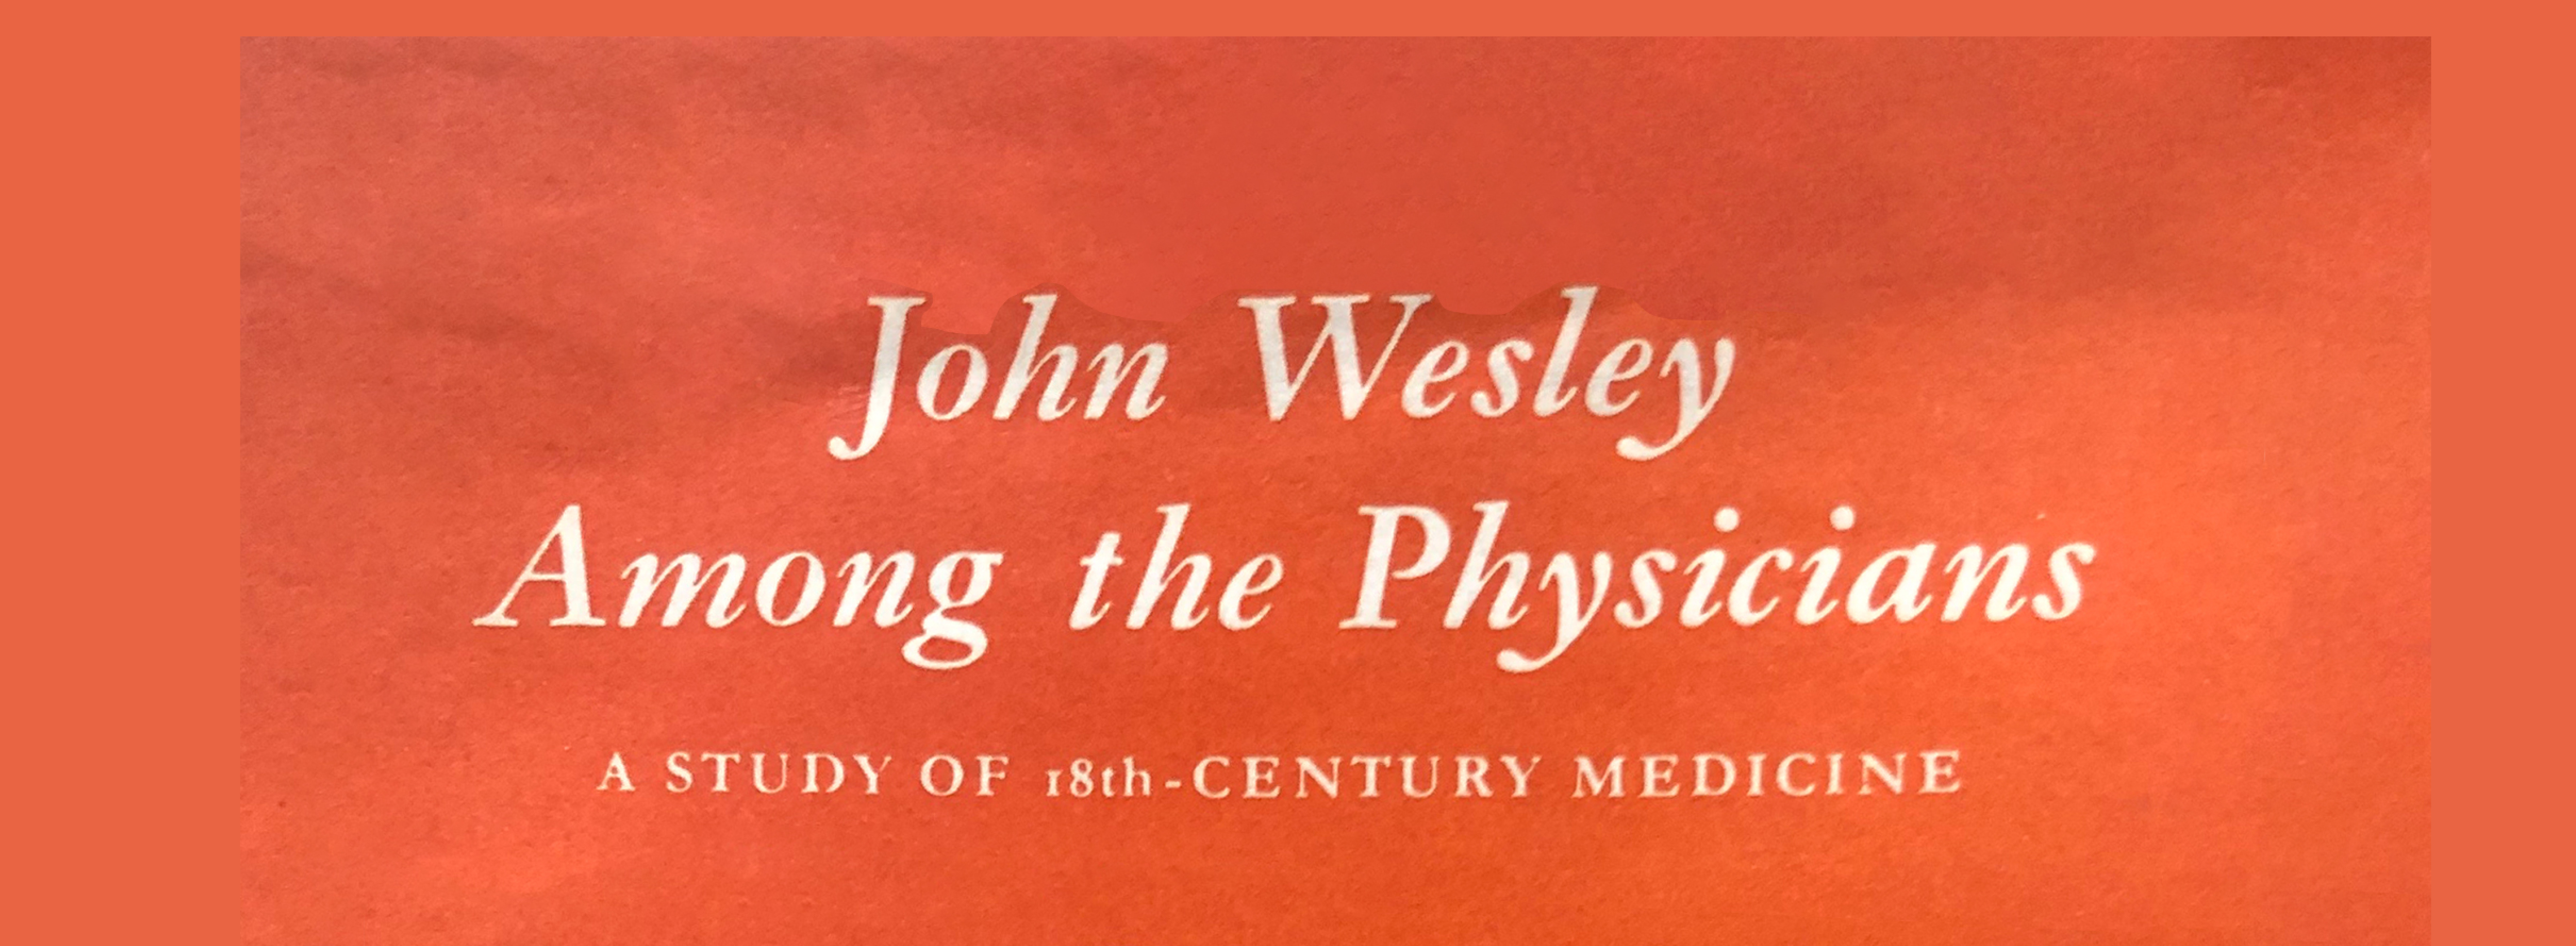 [광림스토리] 웨슬리의 발자취를 따라(10) - ‘의학자 중의 한 사람으로서의 존 웨슬리’